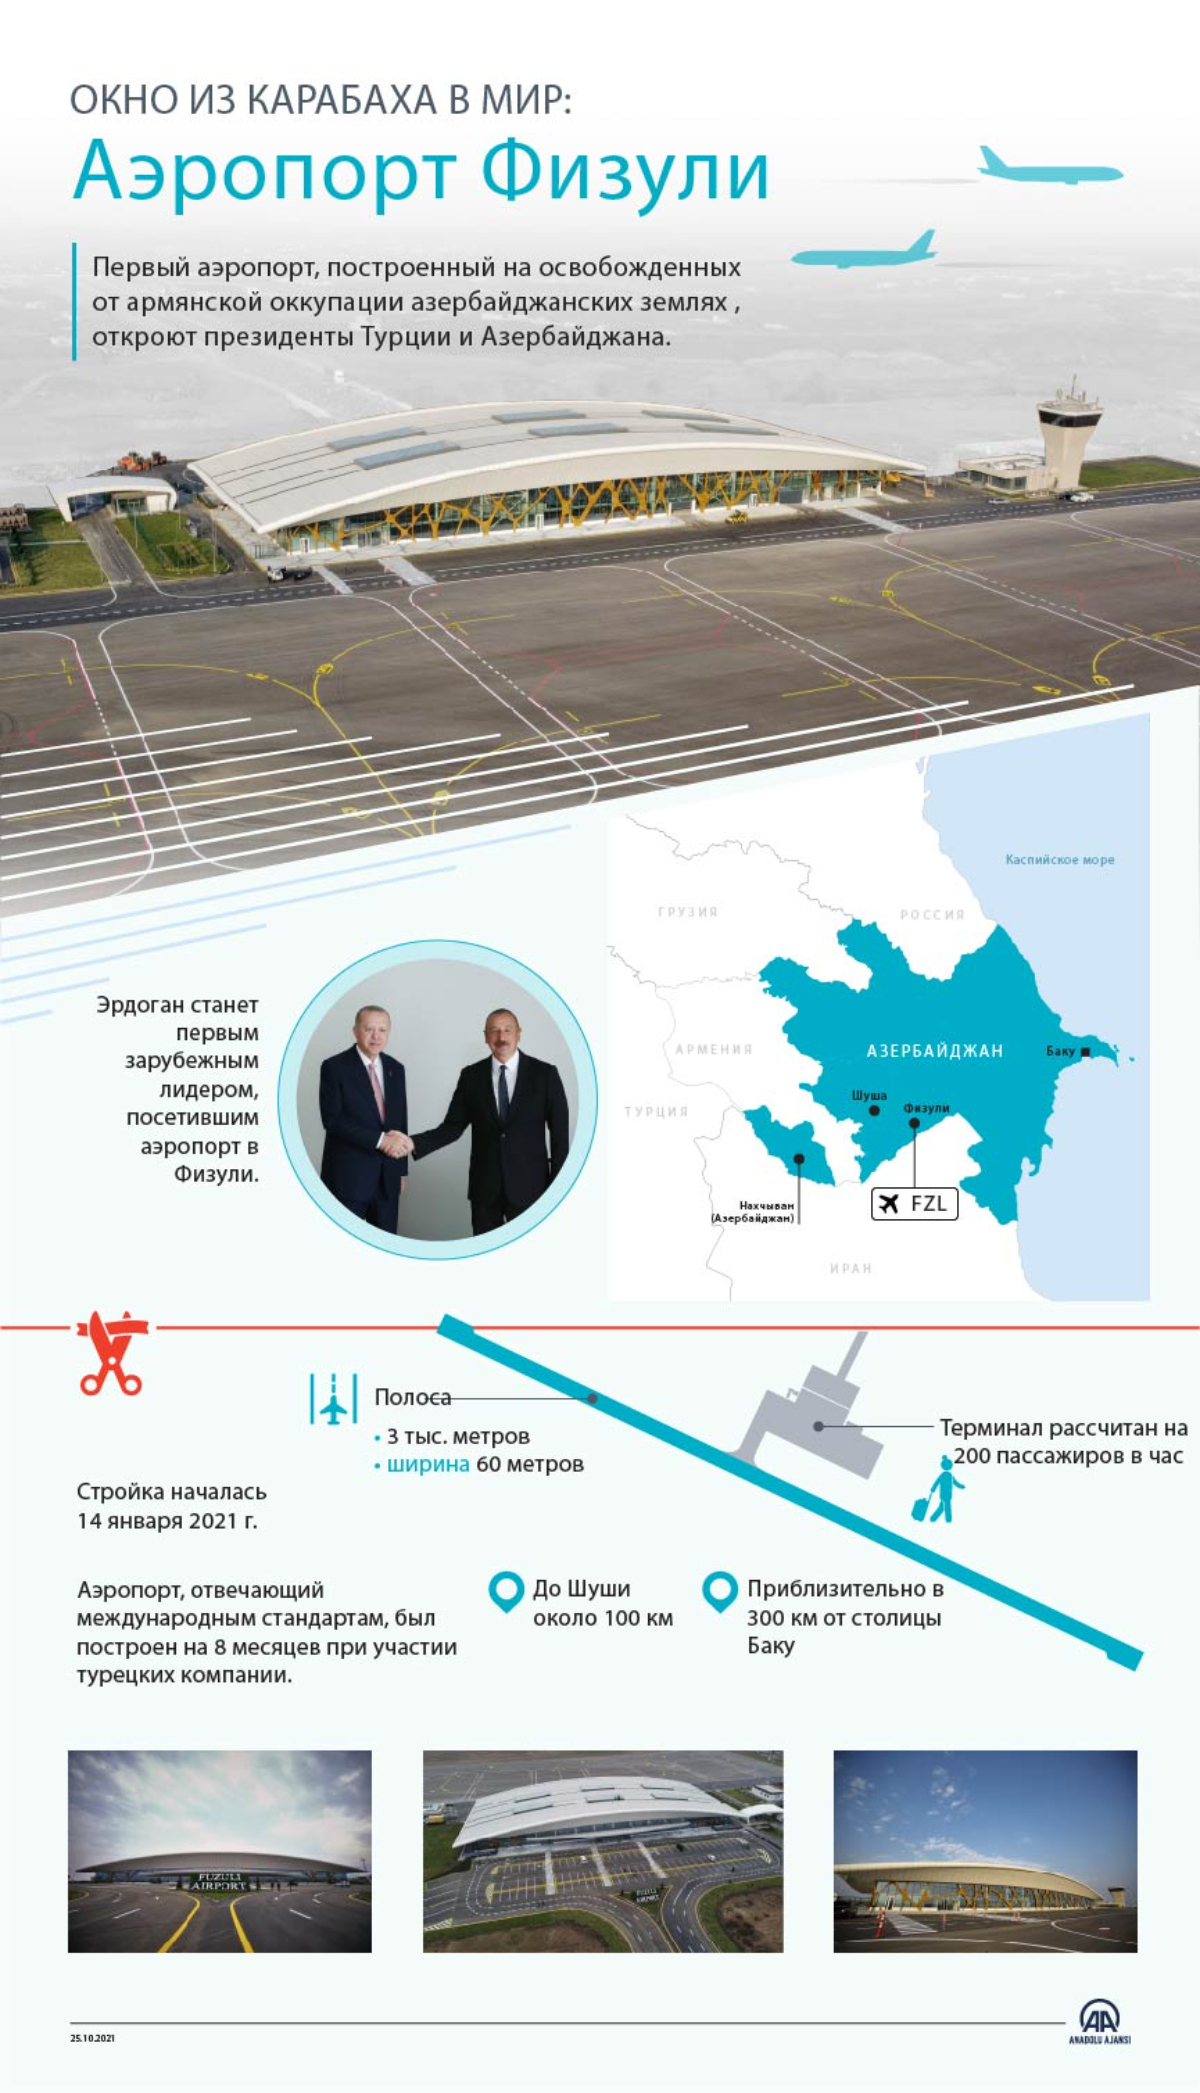 Первый аэропорт в Карабахе построен за 8 месяцев